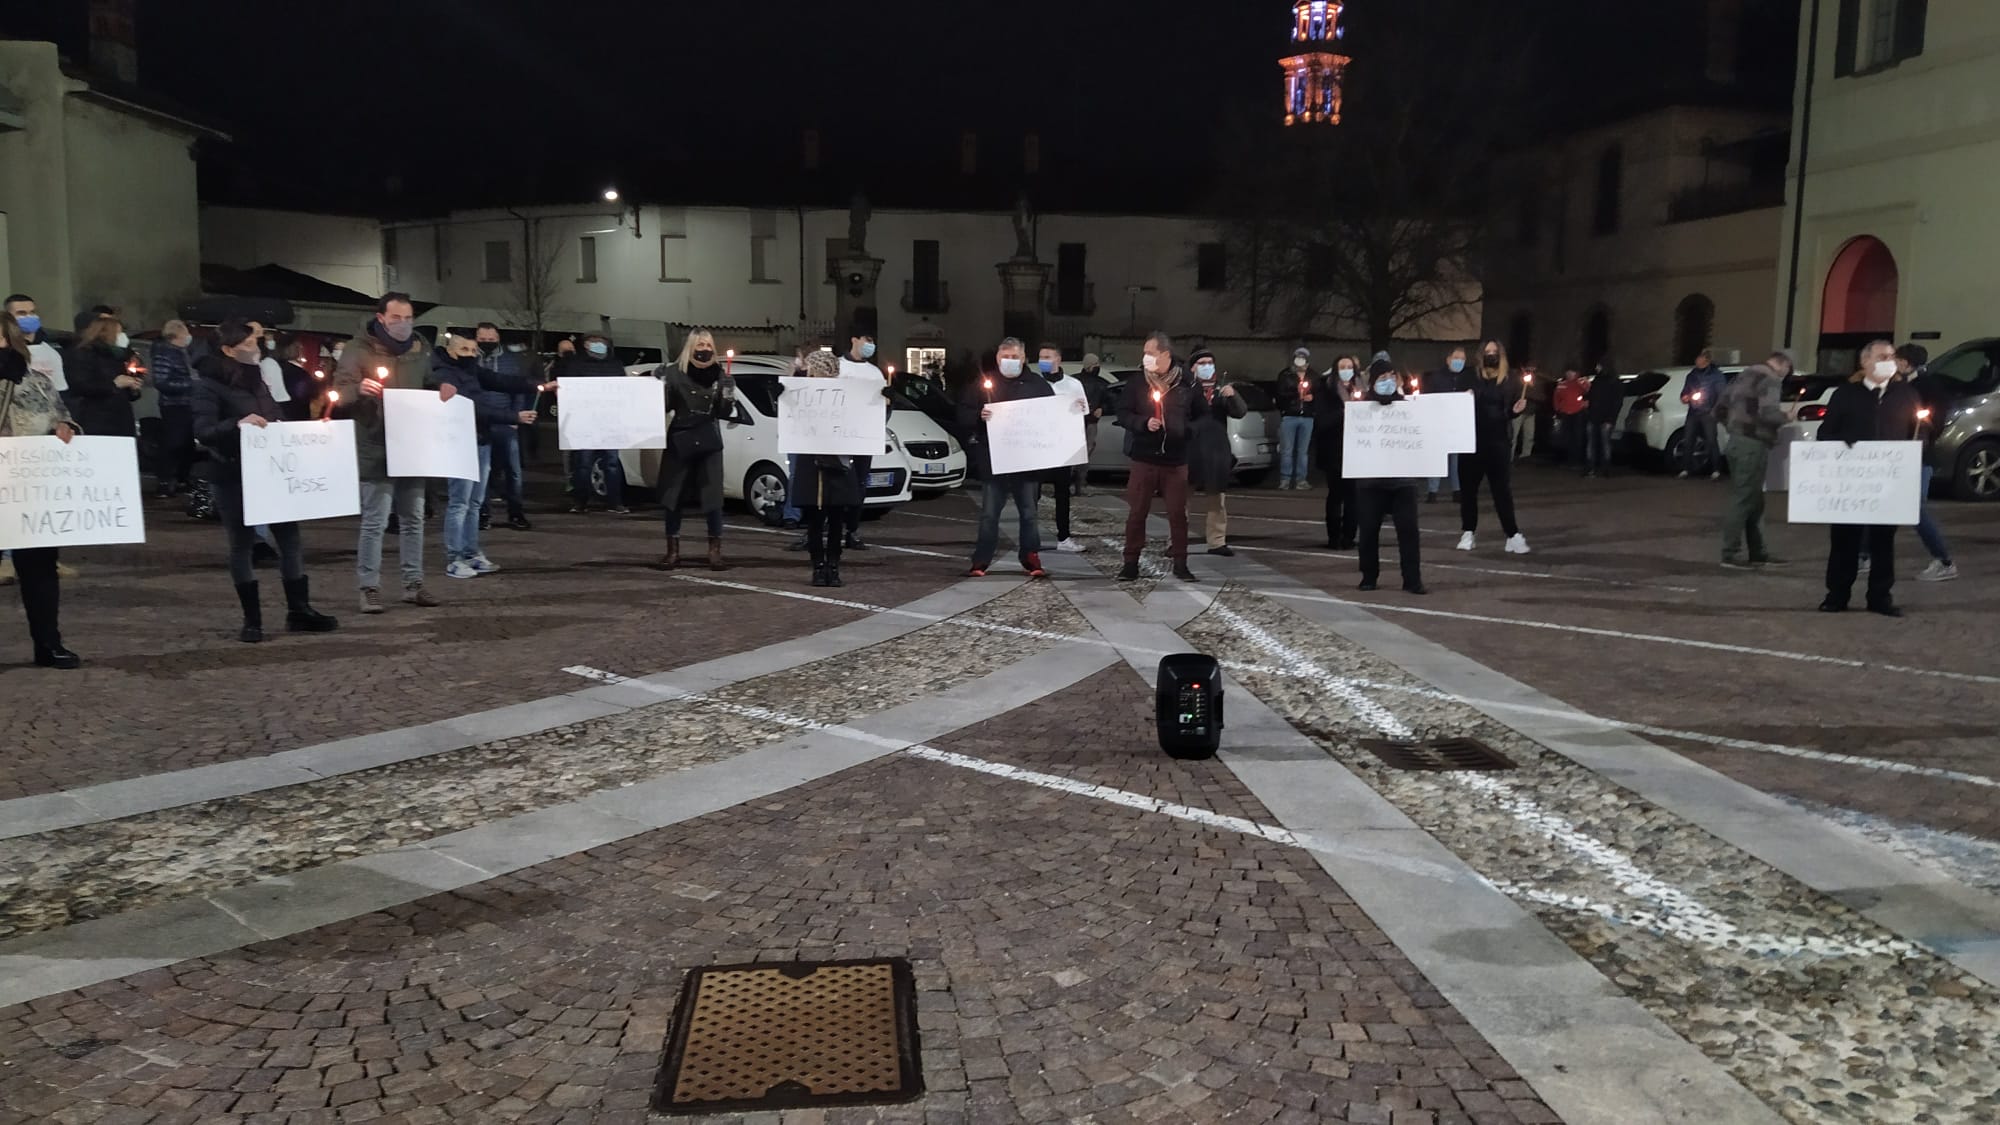 La protesta di baristi e ristoratori: "Fateci lavorare". In scena nel municipio di Corbetta mercoledì 27 gennaio alle 18,30 la manifestazione promossa da alcuni esercenti del territorio. 